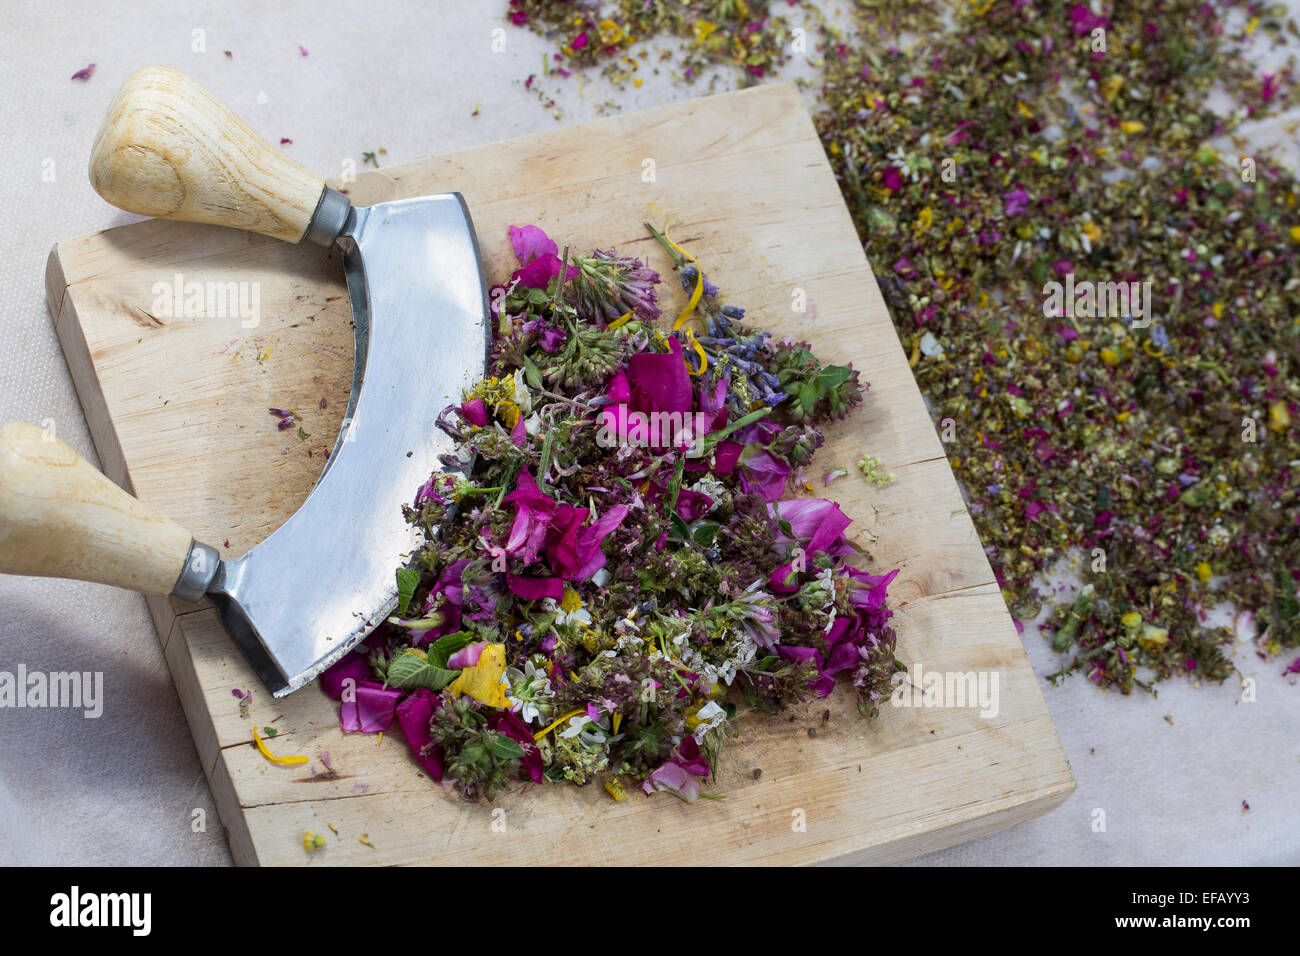 Blüten, Blumen, Blüten, Blütenblätter, affektierte Messer-Wiege Schaukeln Werkzeug, Essbare Blüten, Blumen, Ernte, Wiegemesser, Messer Stockfoto